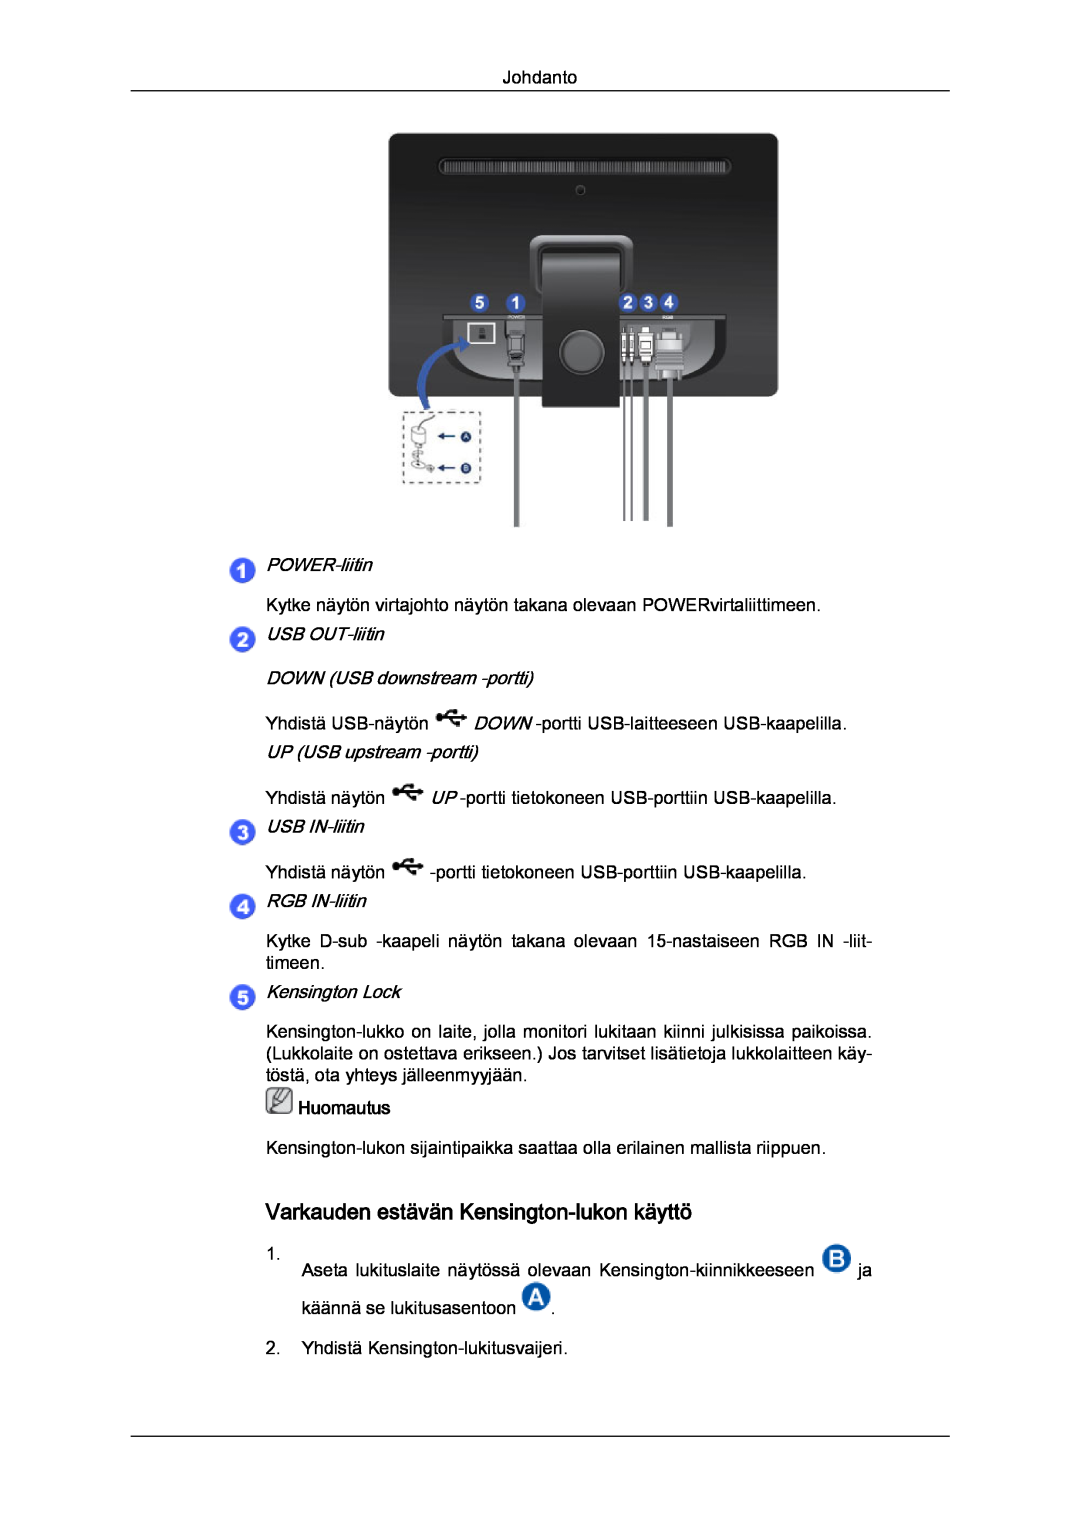 Samsung LS22LFUGF/EN DOWN USB downstream -portti, Varkauden estävän Kensington-lukon käyttö, POWER-liitin, Kensington Lock 